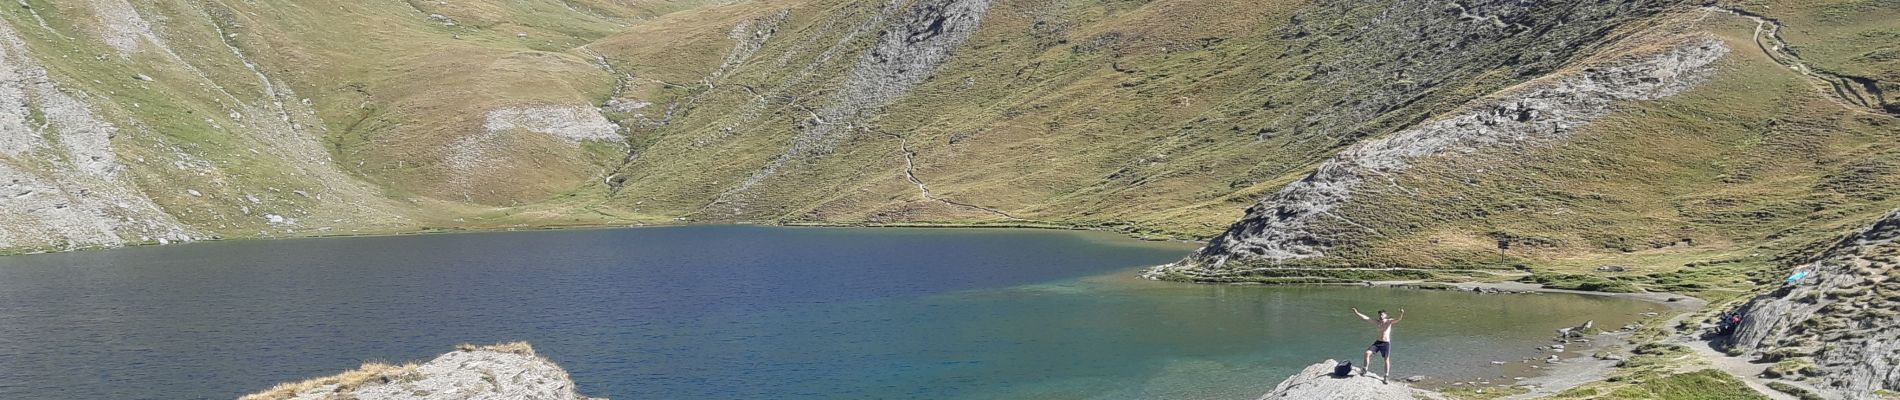 Tocht Stappen Aiguilles - lacs malrif à partir du lombard - Photo